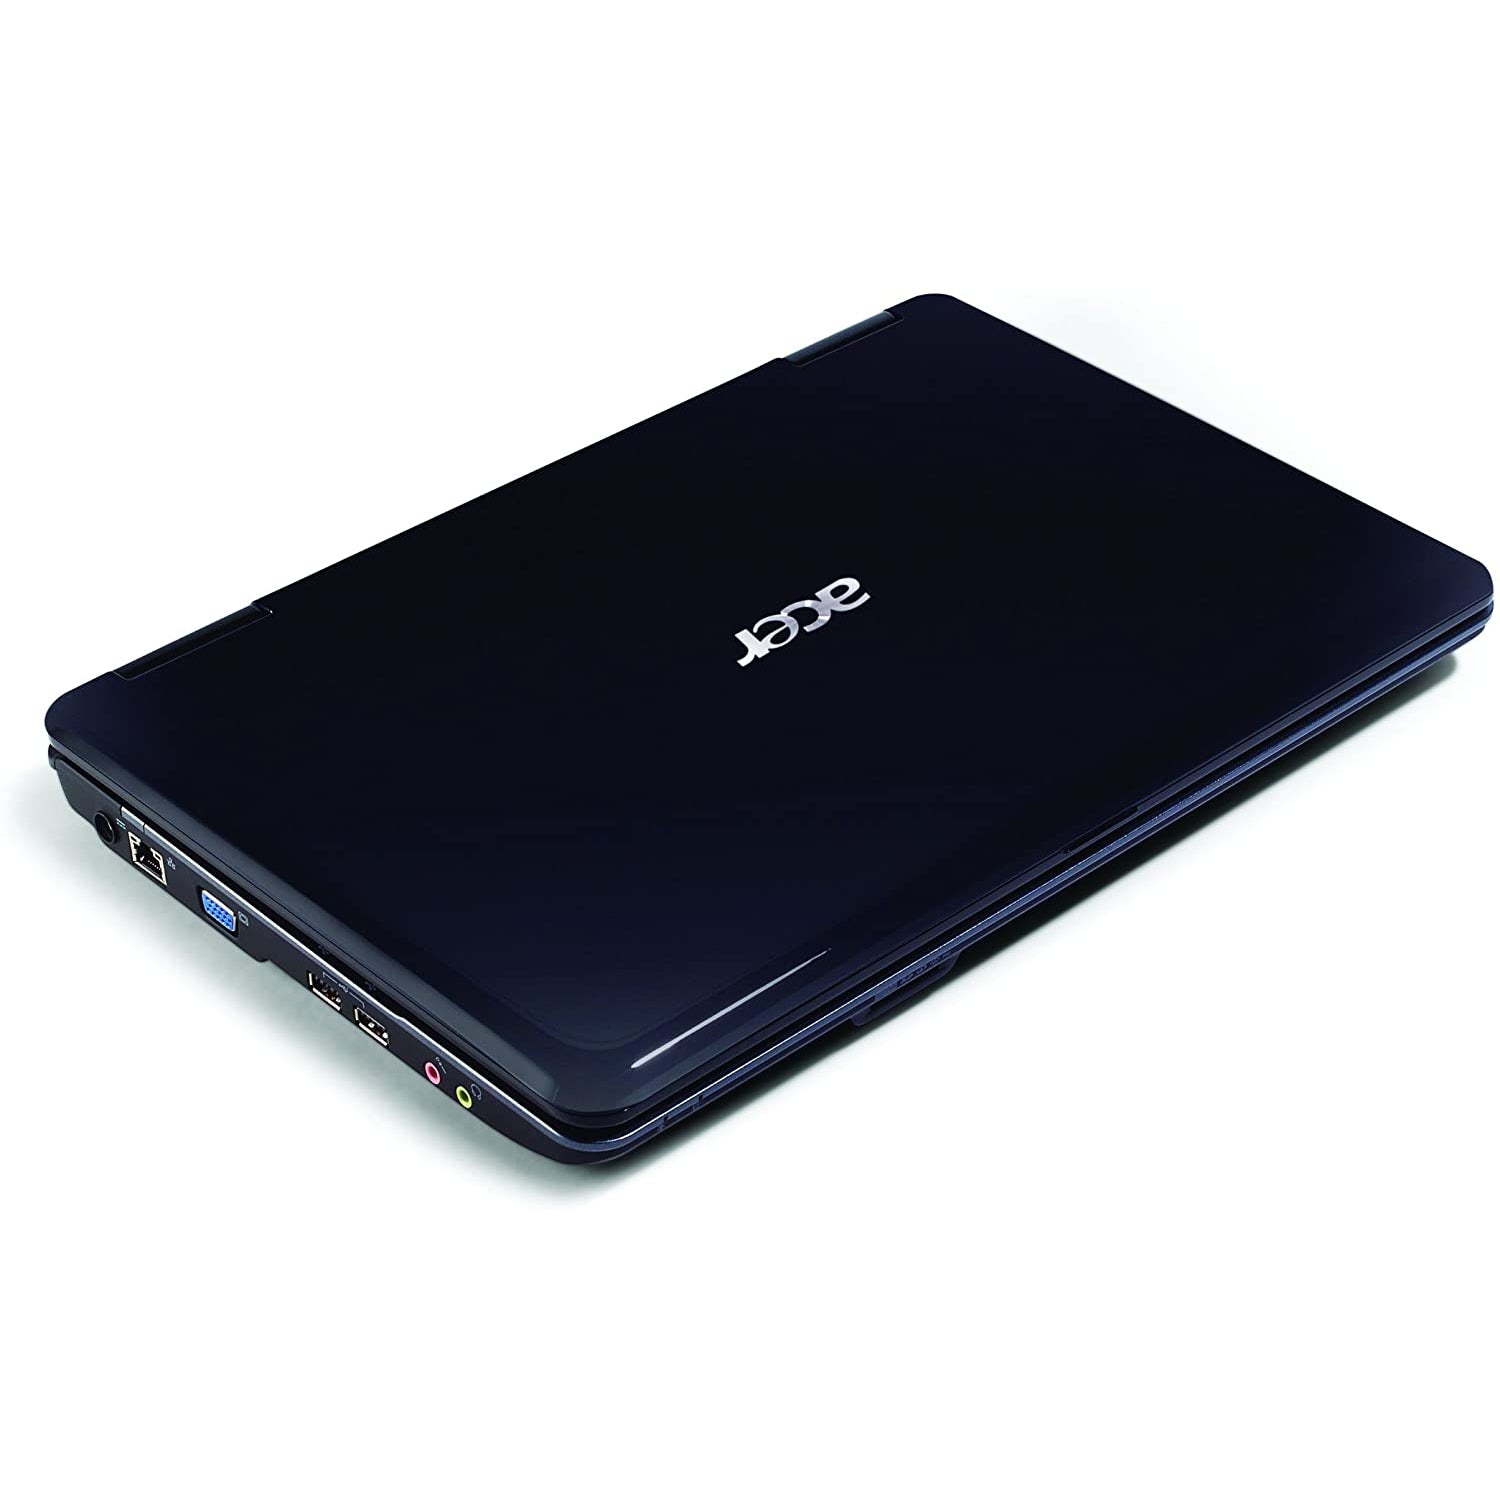 Acer Aspire 5732Z, Intel Pentium, 4GB RAM, 160GB HDD, 15.6" - Blue